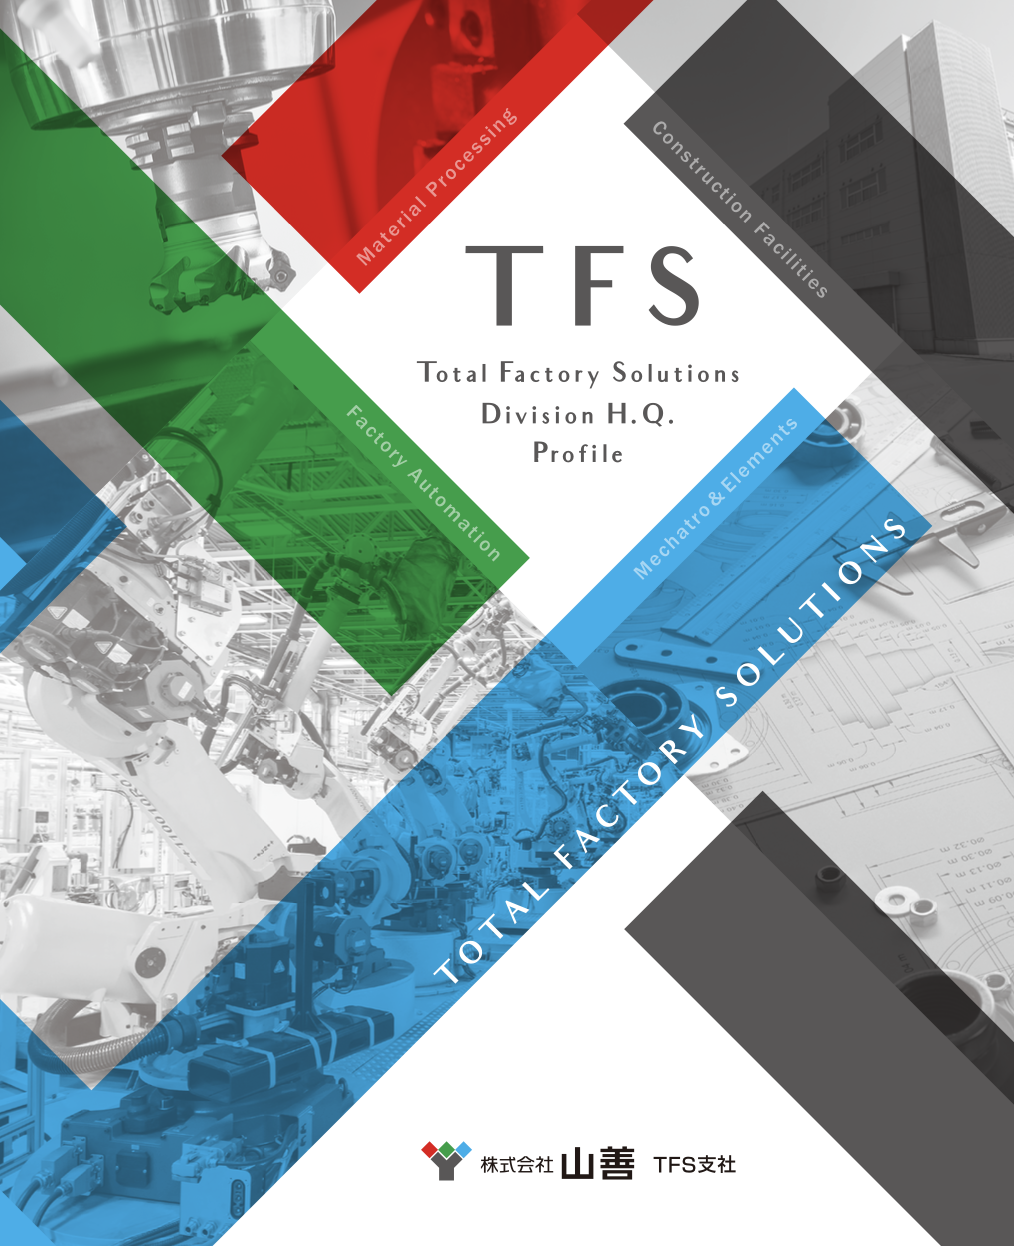 「山善TFS支社の紹介資料パンフレット」ダウンロード